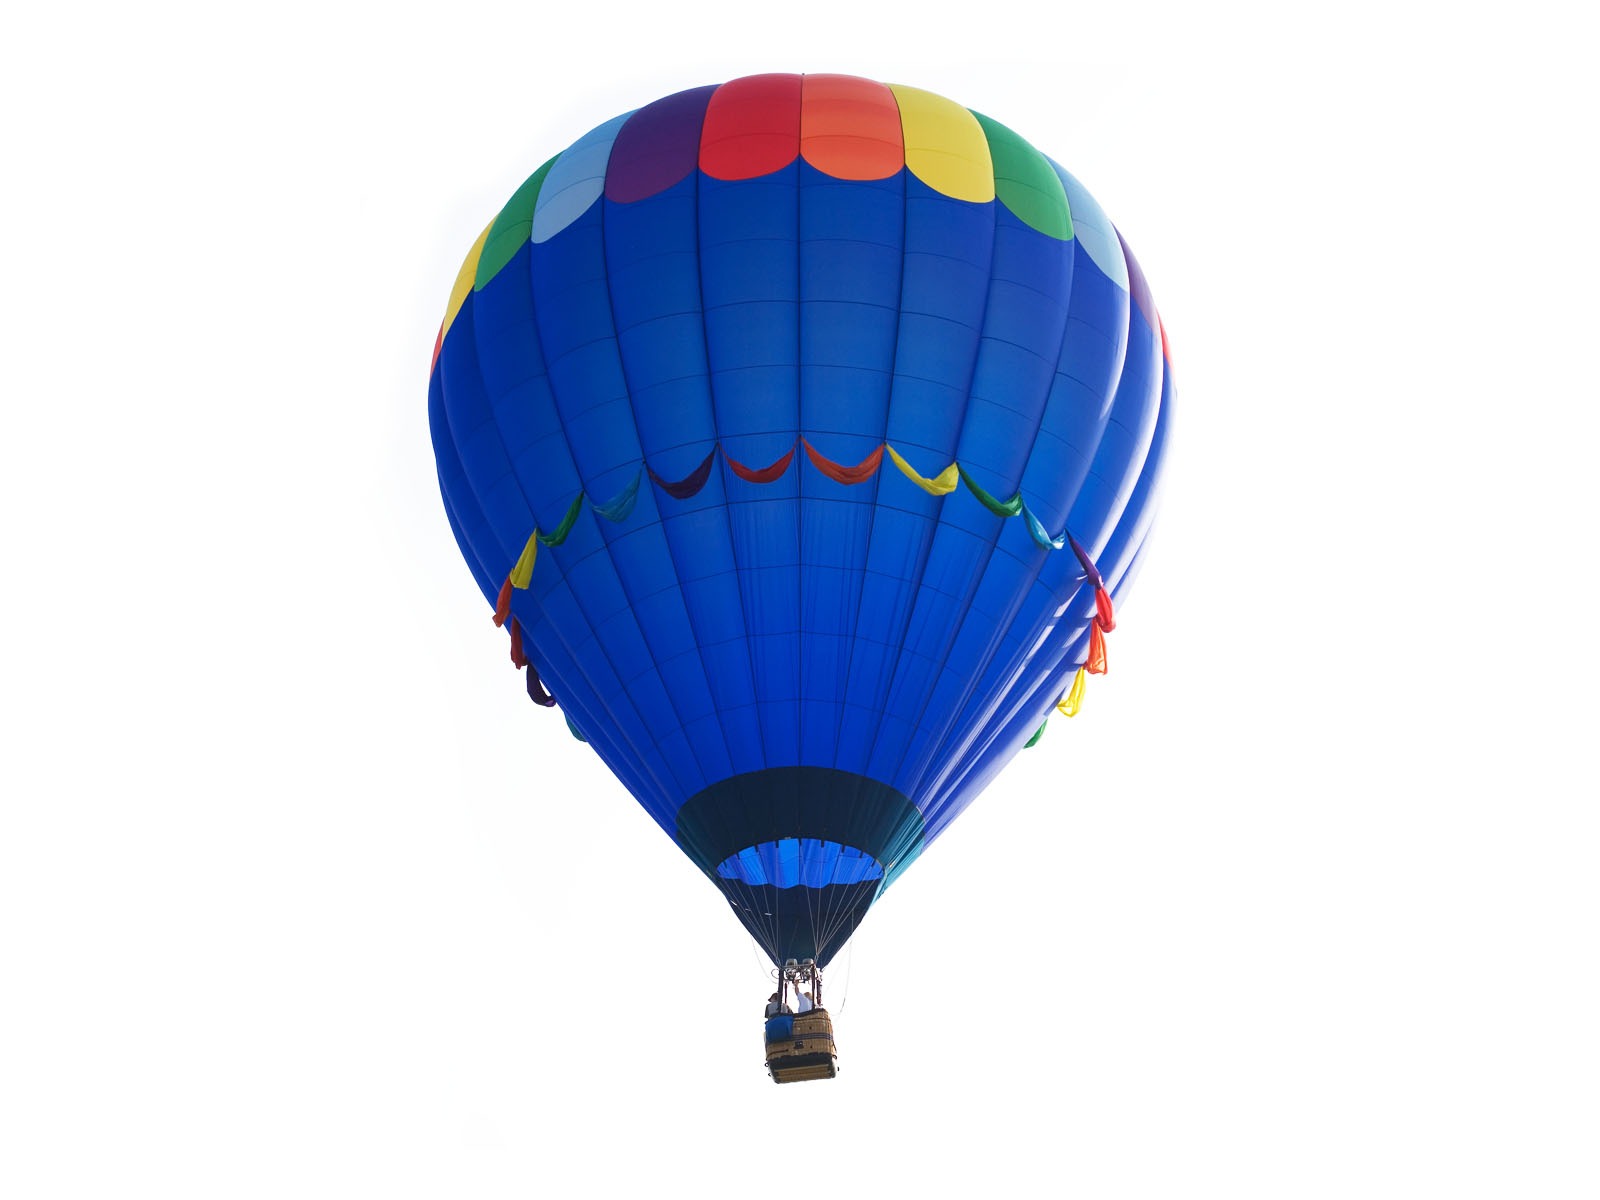 Hot air balloon wallpaper #12 - 1600x1200